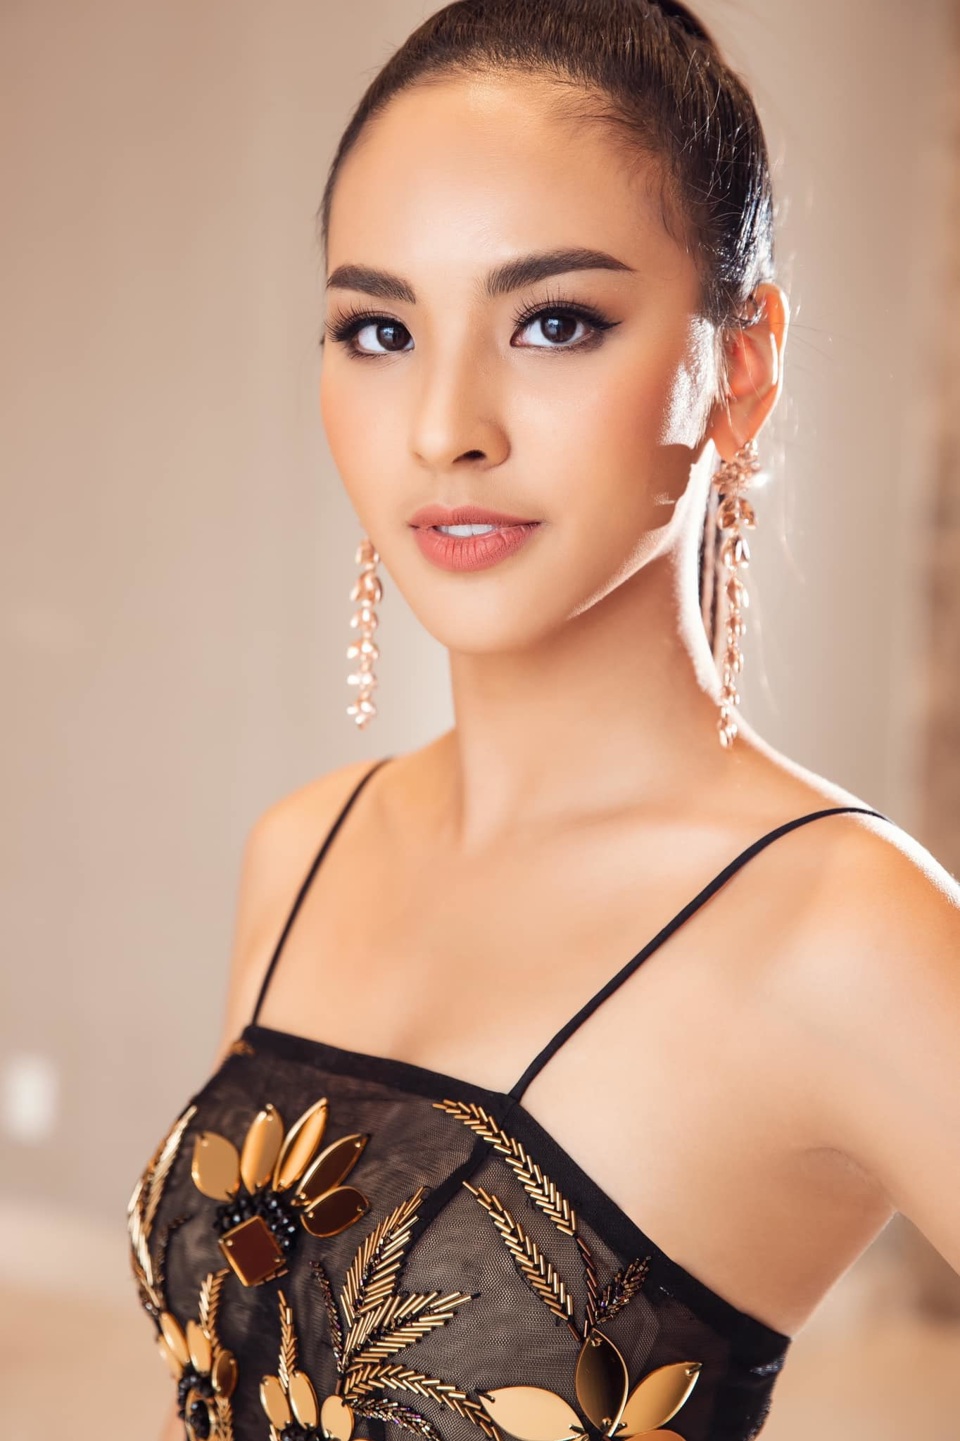 Giám đốc Quốc gia Miss Universe Vietnam Quỳnh Nga từng bị miệt thị về ngoại hình - Ảnh 2